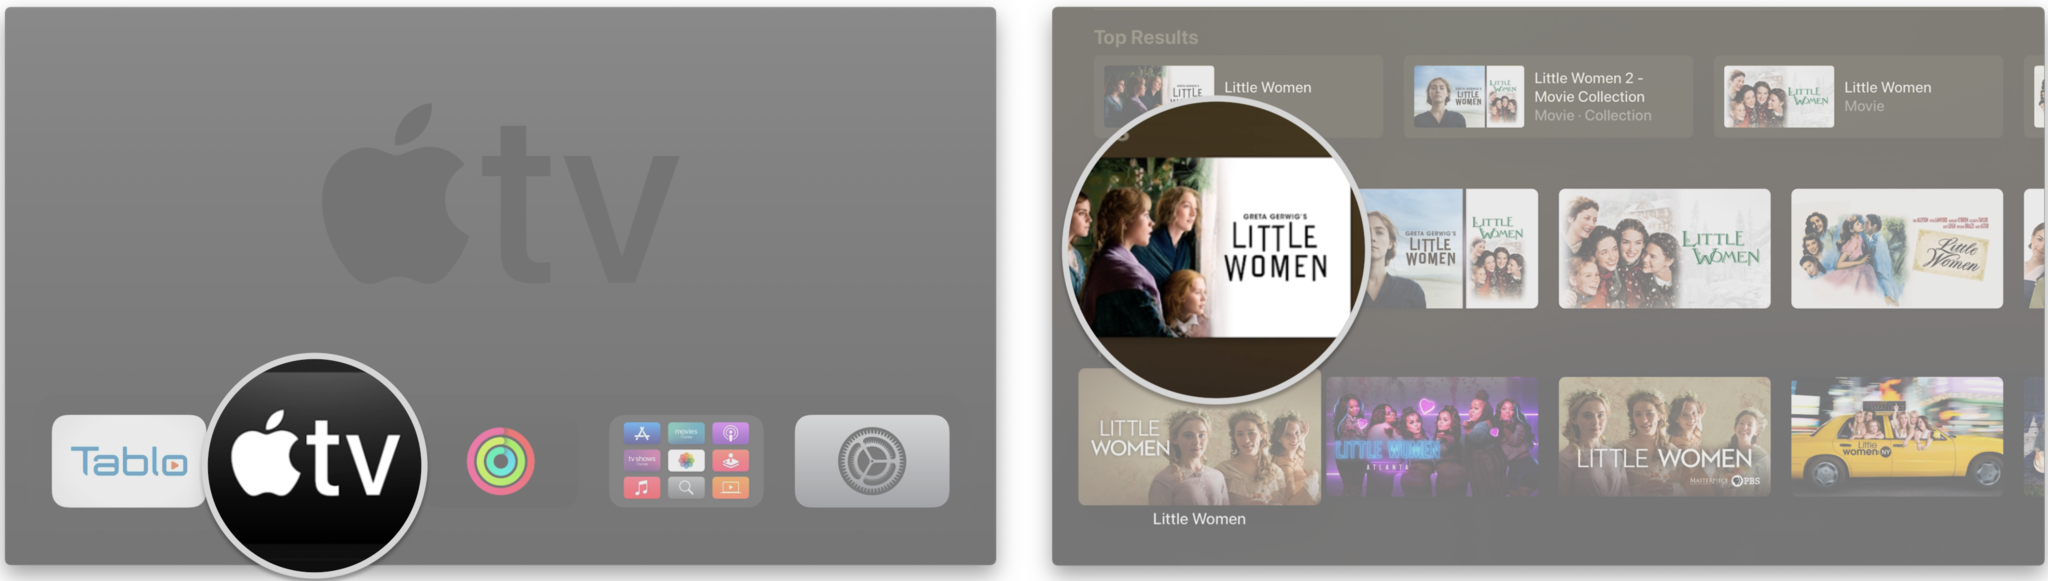 Comment identifier les films avec iTunes Extras sur l'Apple TV en affichant les étapes : lancez l'application TV, accédez à un film pour lequel vous souhaitez rechercher des extras iTunes